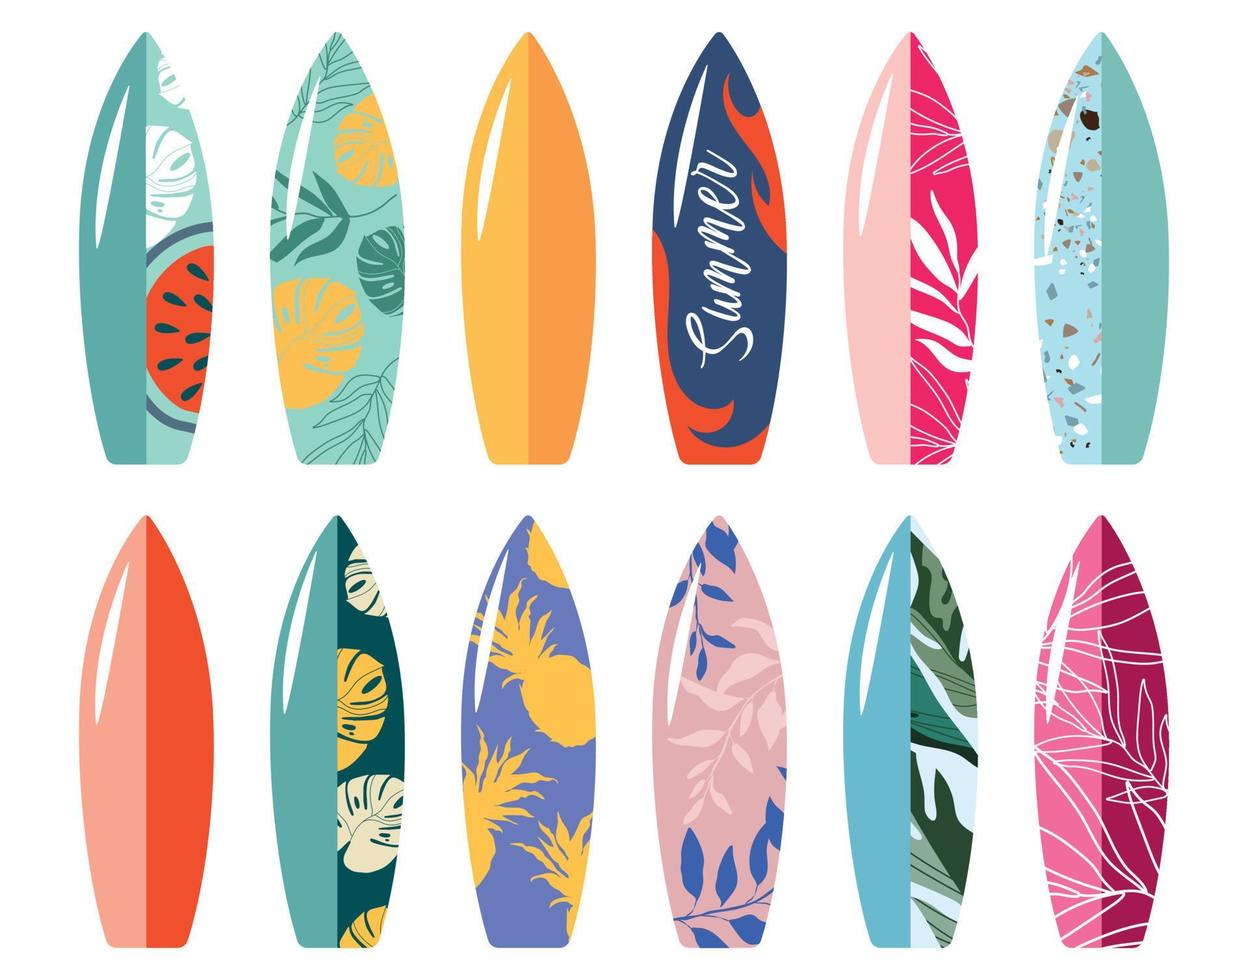 kleurrijk verzameling van surfplanken. vector illustratie. vector illustratie voor insigne, logo, afdrukken, insigne, kaart, omslag, tas, geval, uitnodiging, embleem, etiket